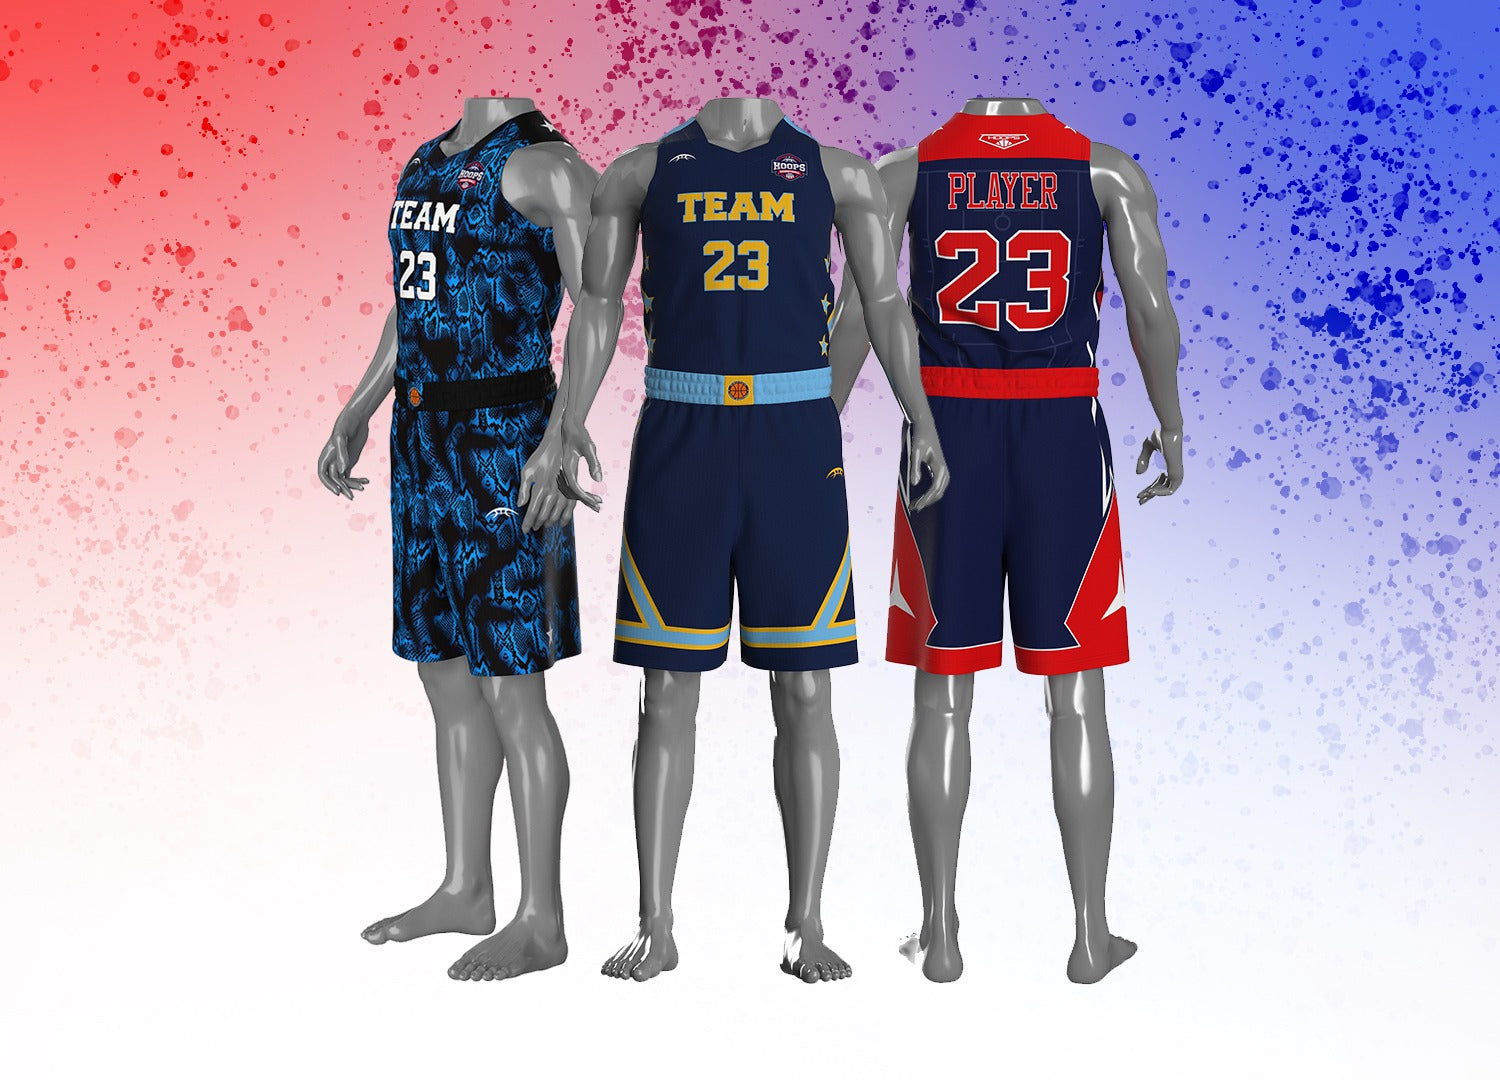 Custom Basketball Jerseys  Personalized Basketball Jersey Maker